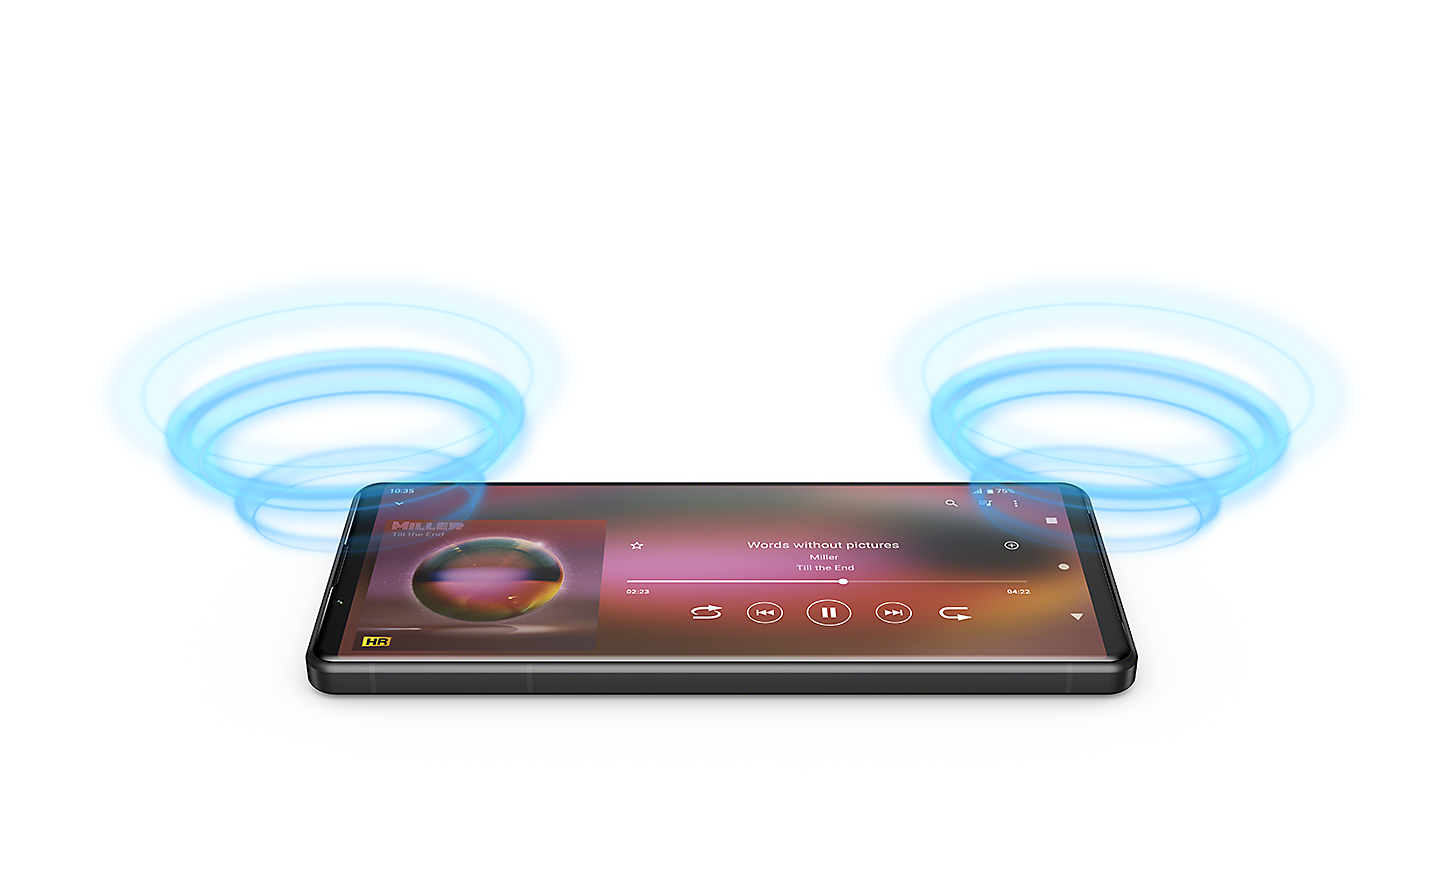 Xperia 5 IV con la IU del reproductor de música en su pantalla y las ondas sonoras azules ilustradas que surgen en cada extremo del teléfono